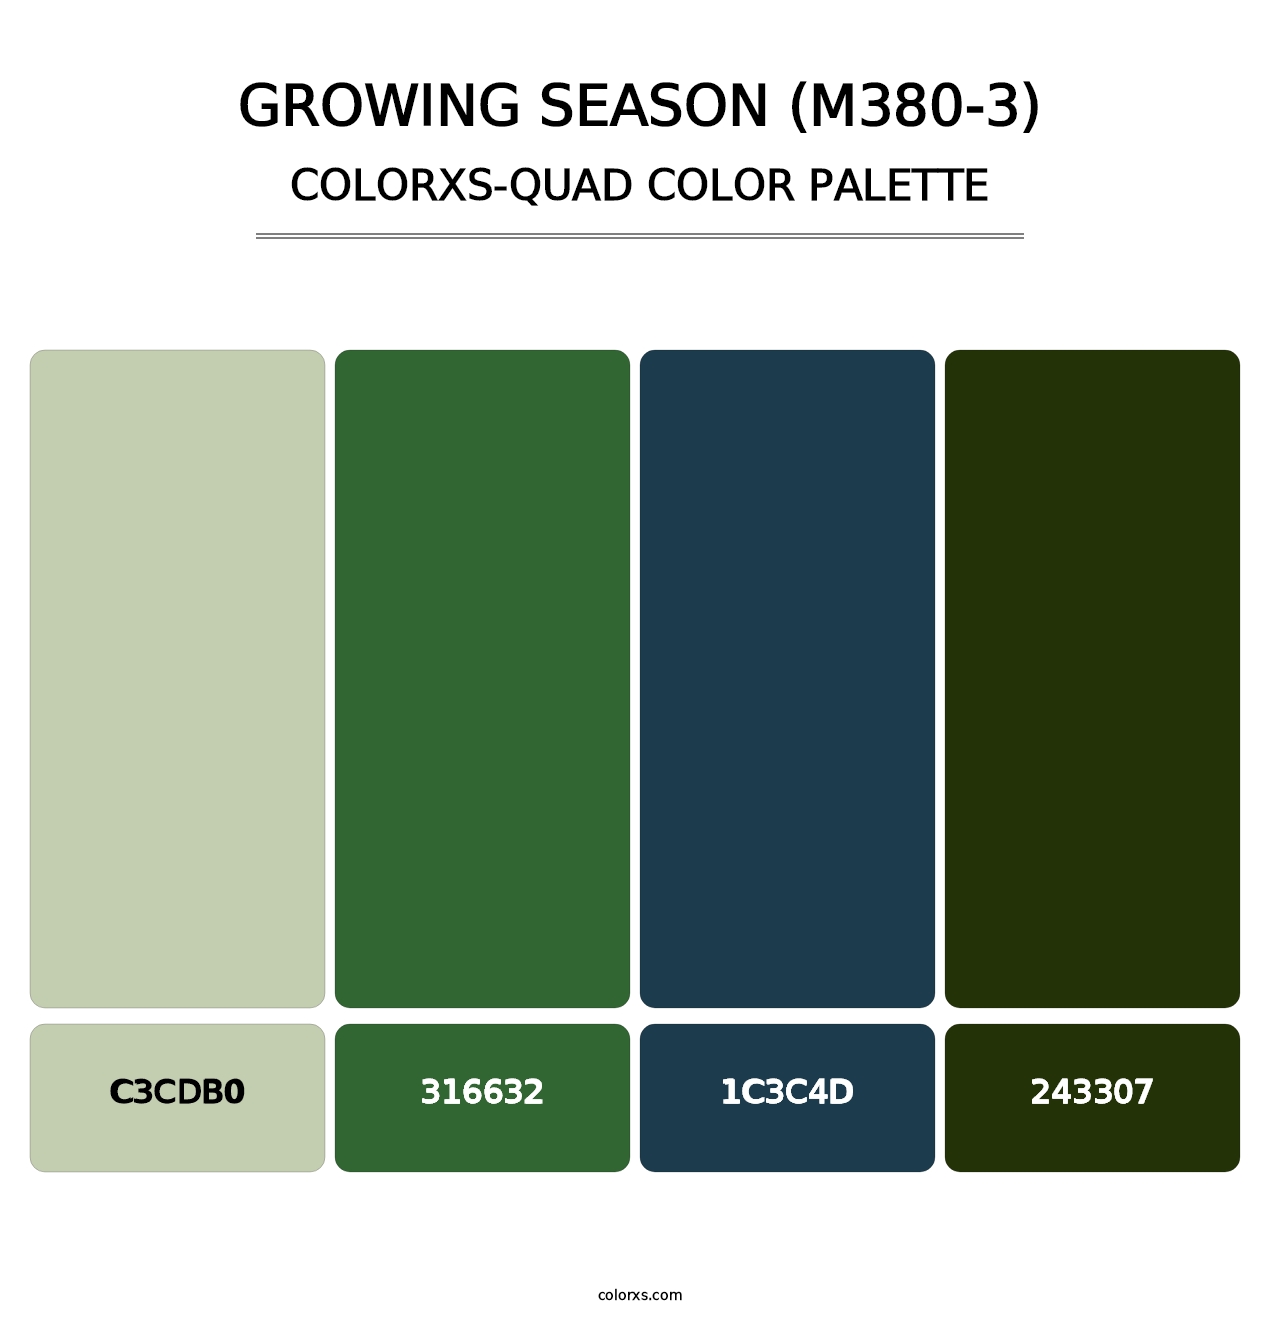 Growing Season (M380-3) - Colorxs Quad Palette